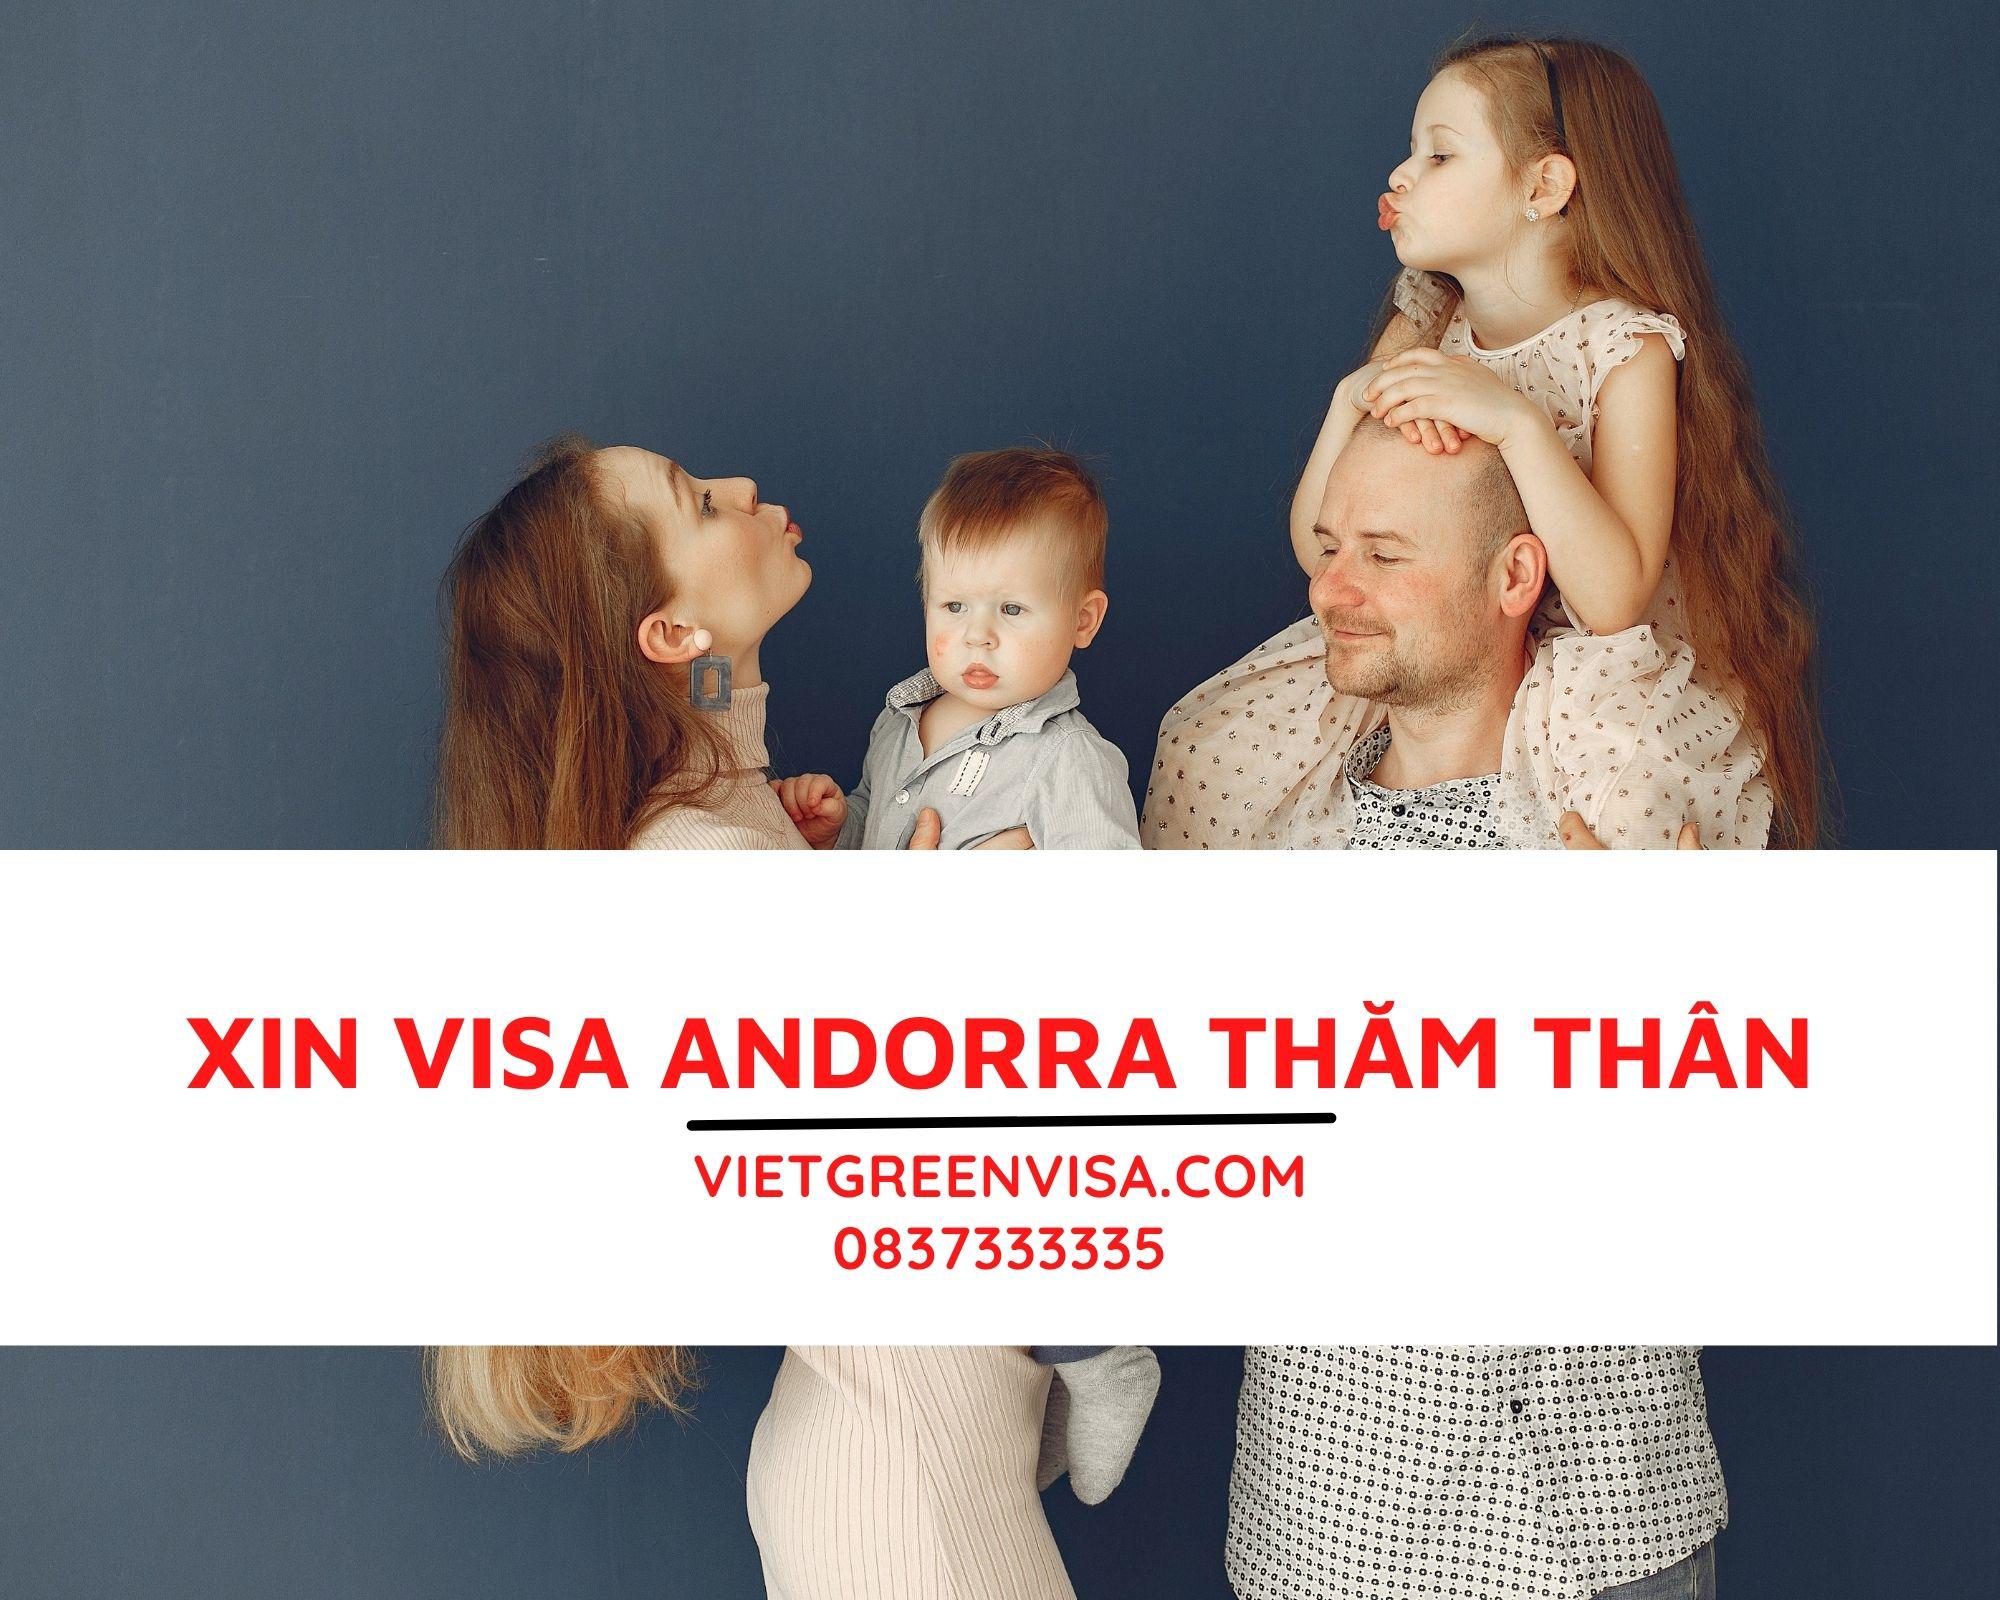 Hỗ trợ xin visa Andorra thăm thân, hỗ trợ bảo hiểm